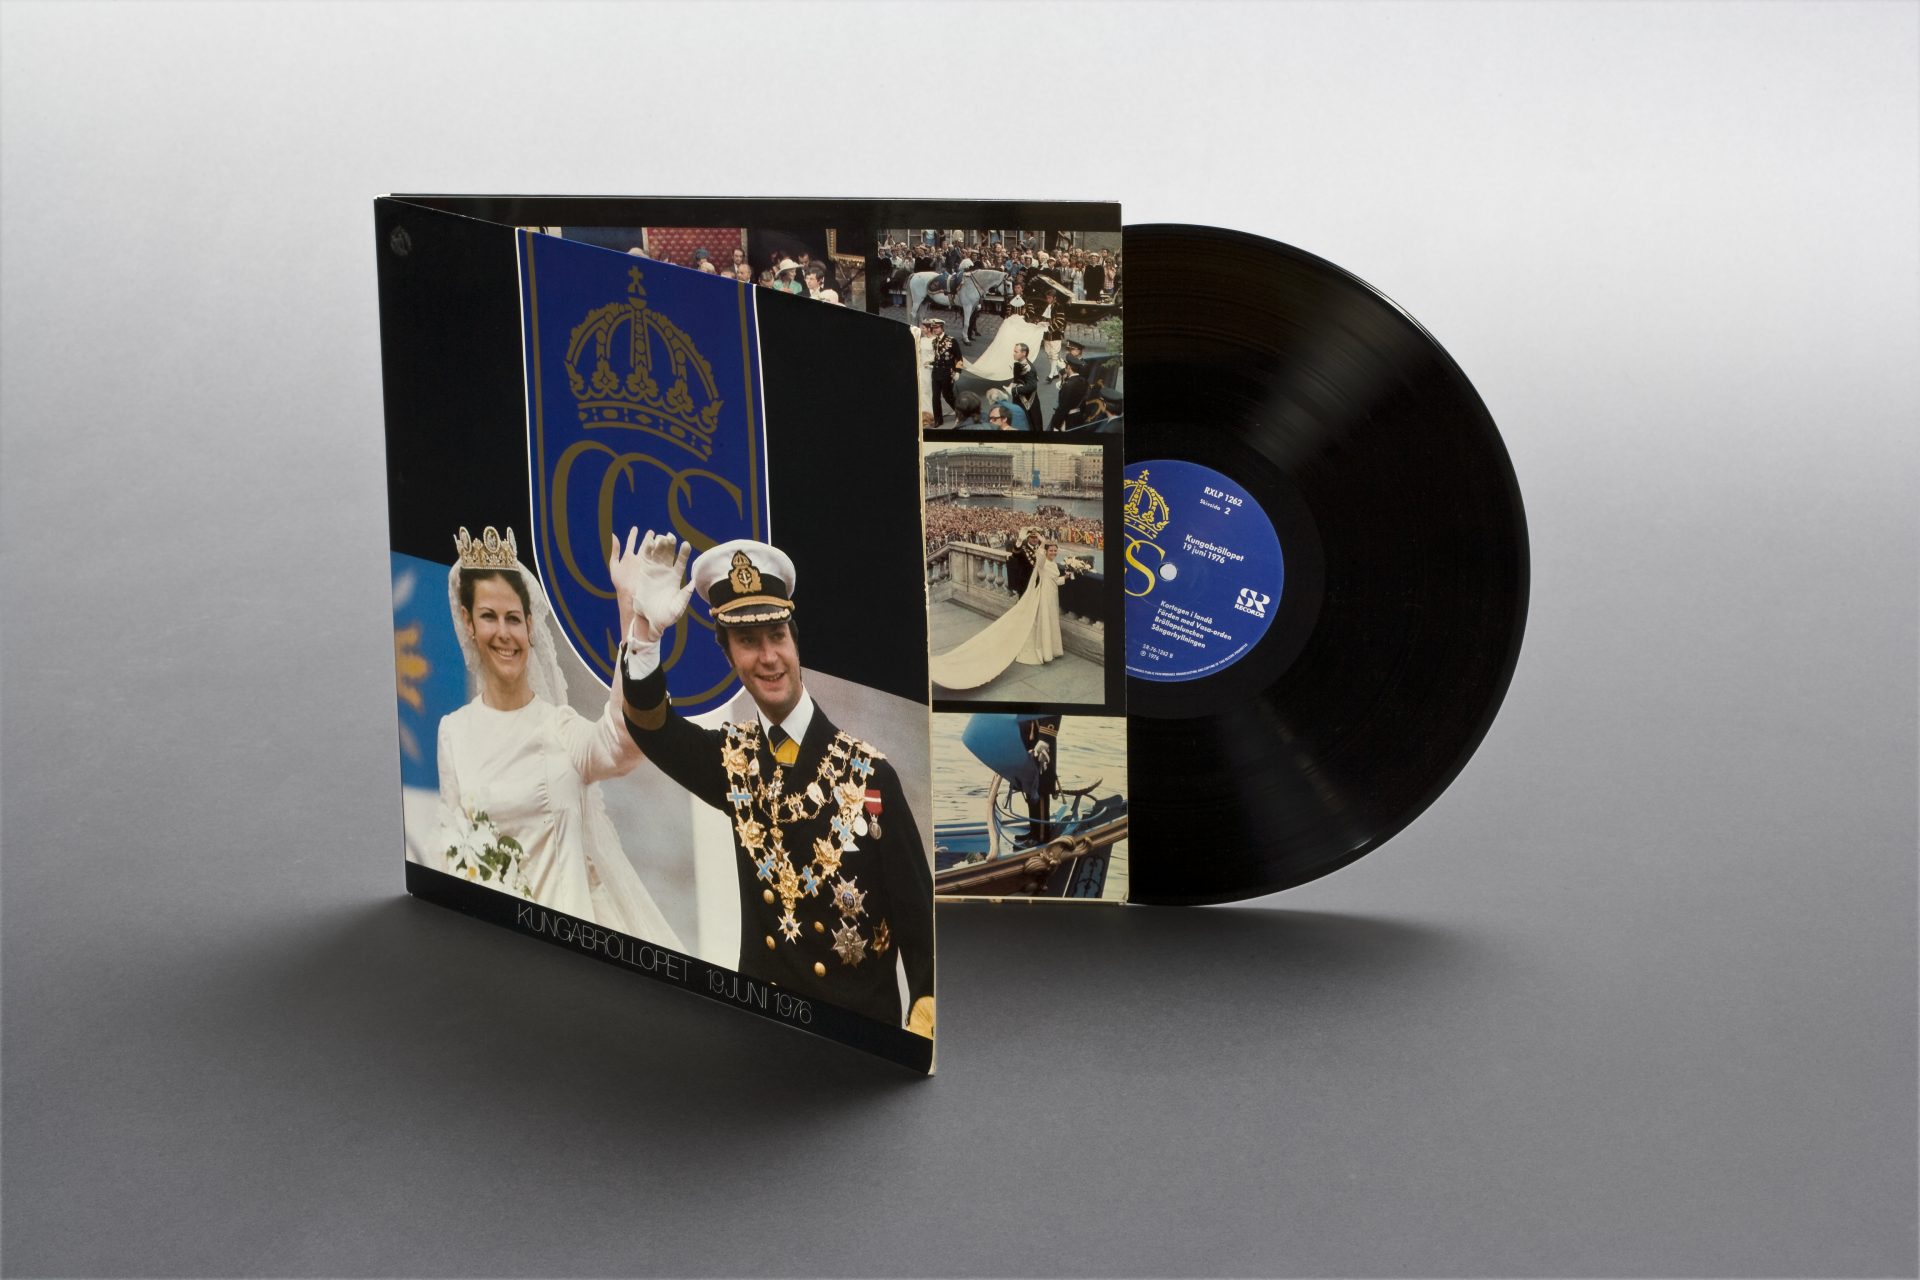 LP-skiva som sticker ut ur sitt fodral. På fodralet ser man Kung Carl XVI Gustaf och Drottning Silvia i bröllopskläder. De vinkar och ler.